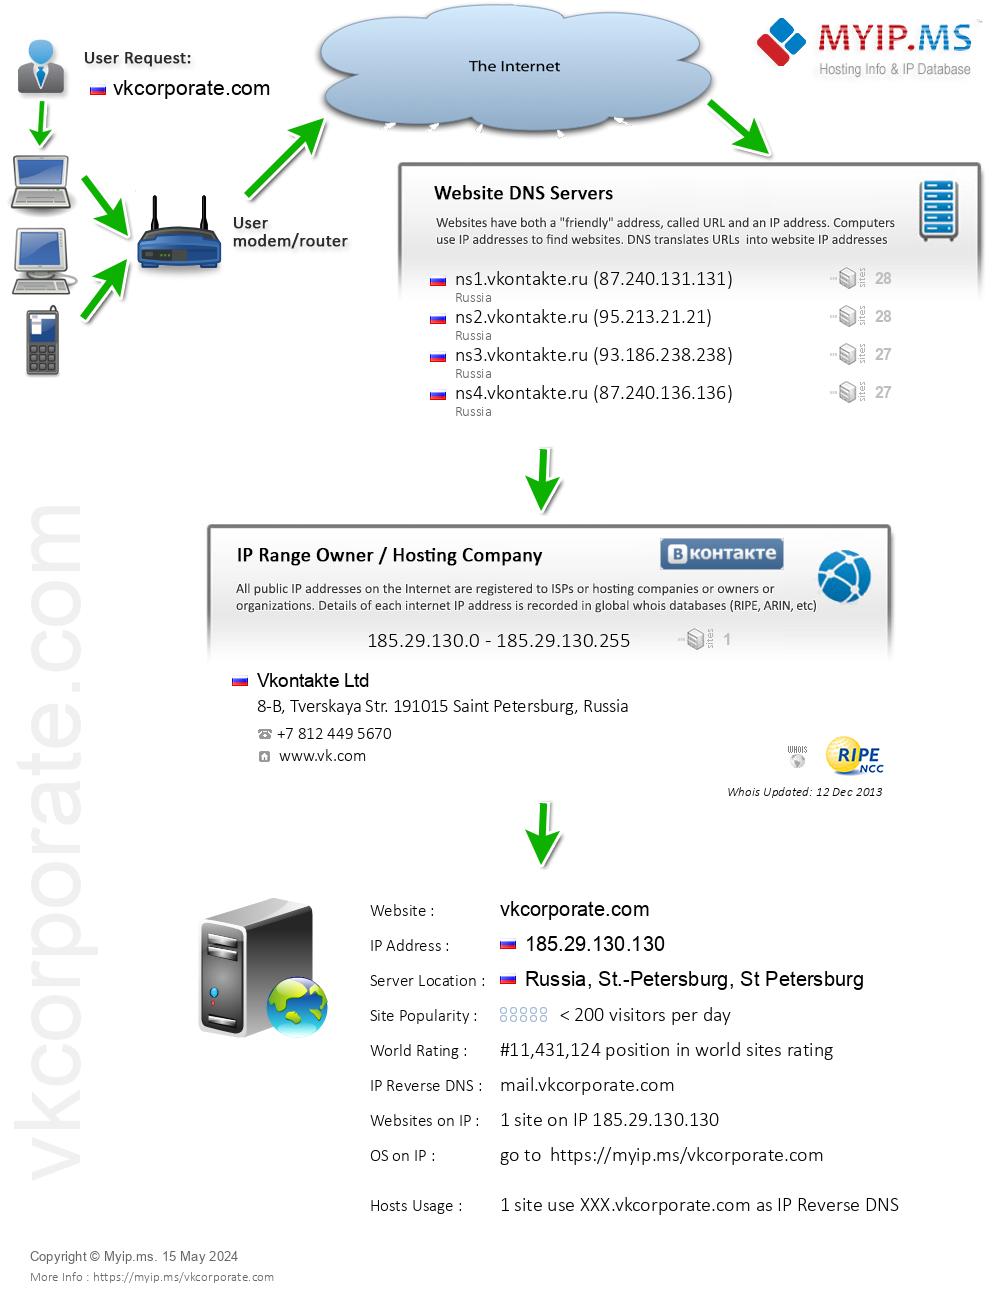 Vkcorporate.com - Website Hosting Visual IP Diagram